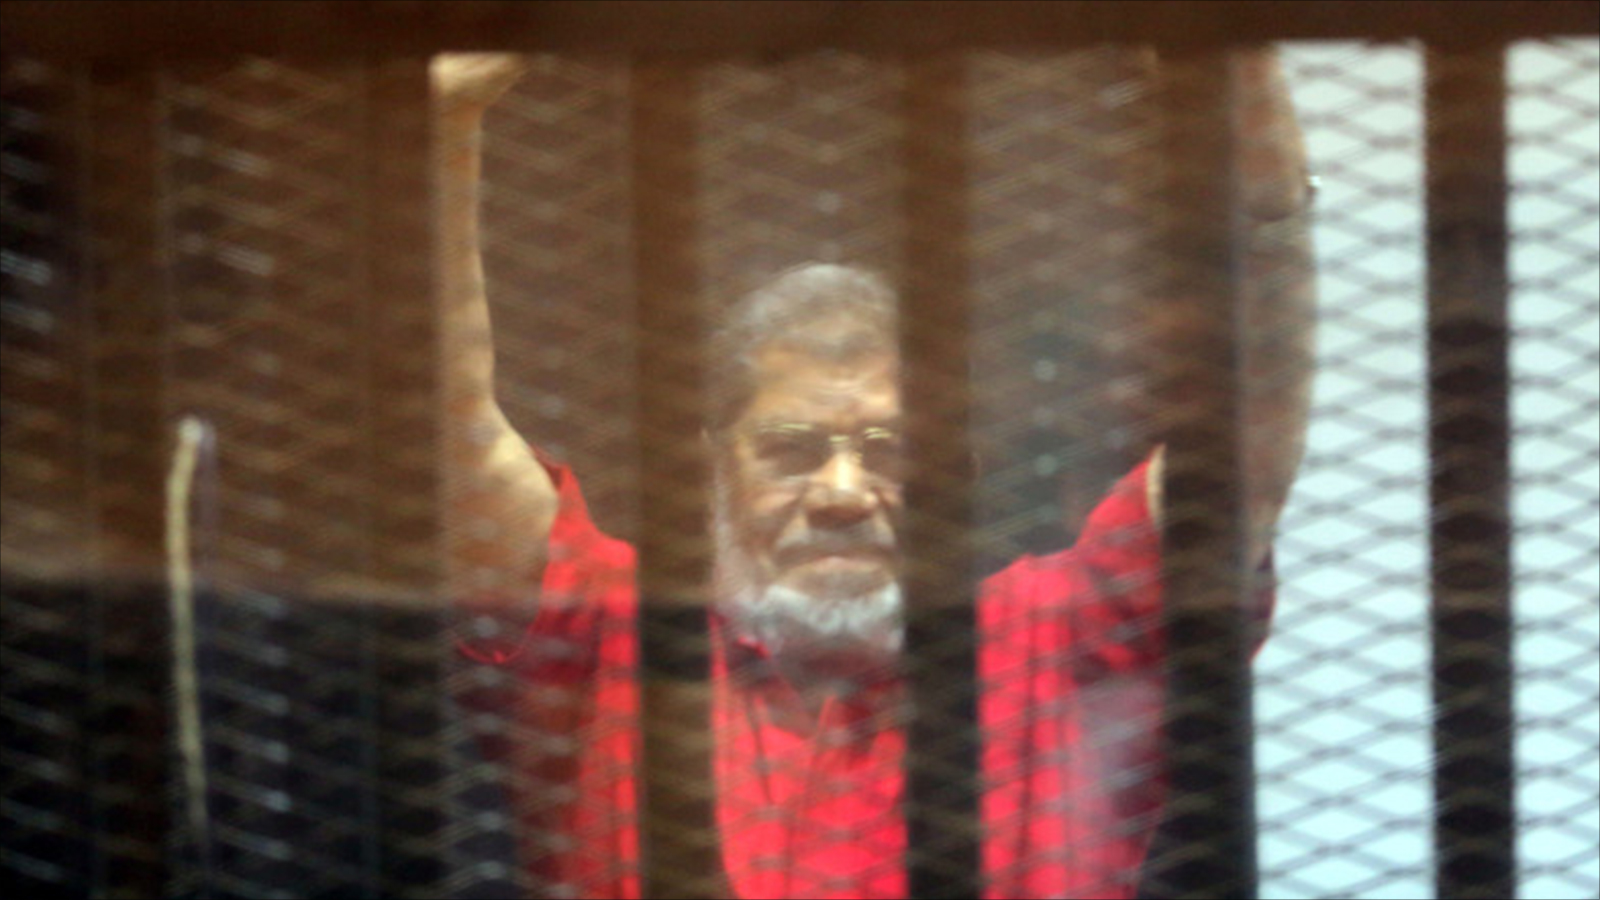 ‪سجانو مرسي لم يكتفوا بقضبان الحديد بل وضعوه في قفص زجاجي يمنع صوته عن الشعب‬ (الأوروبية)